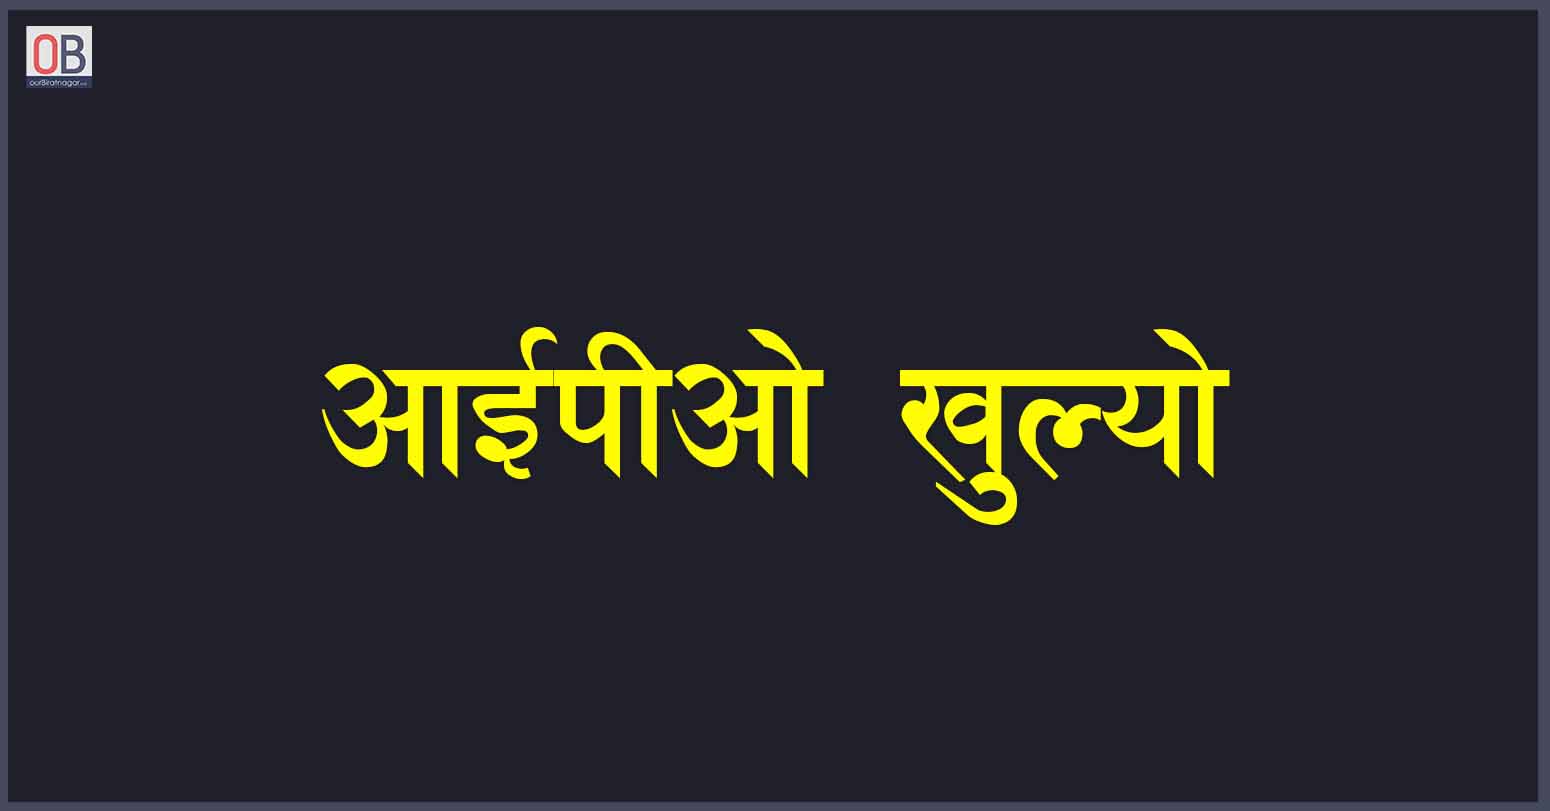 नेपाल वेयरहाउजिङ कम्पनीको आईपीओ खुल्यो